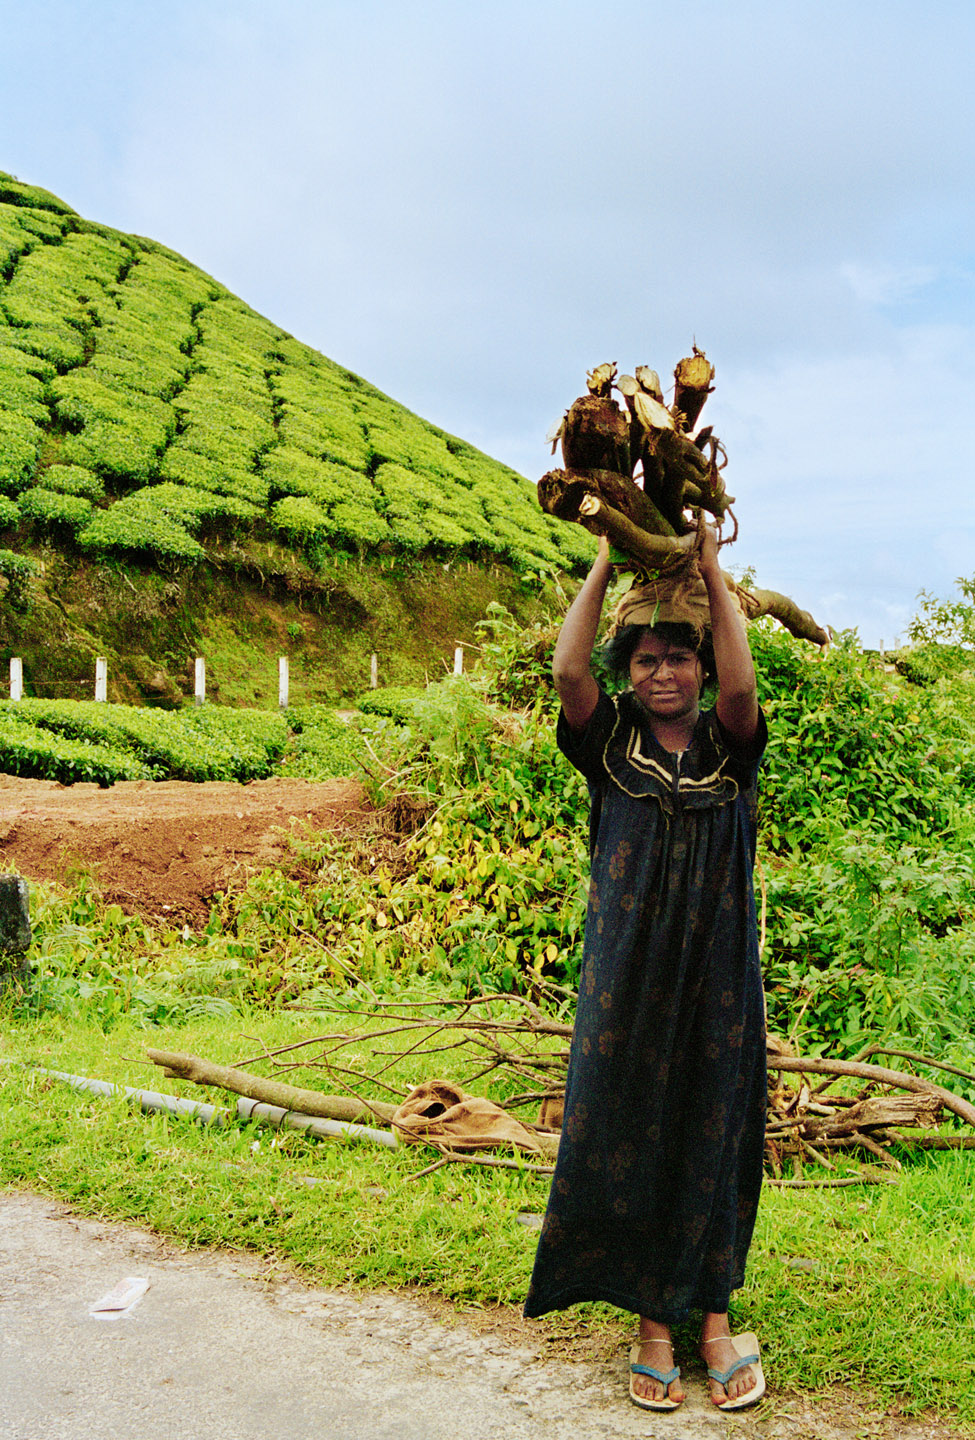 Tata tea fields, Munnar,  Kerala, India, 2006